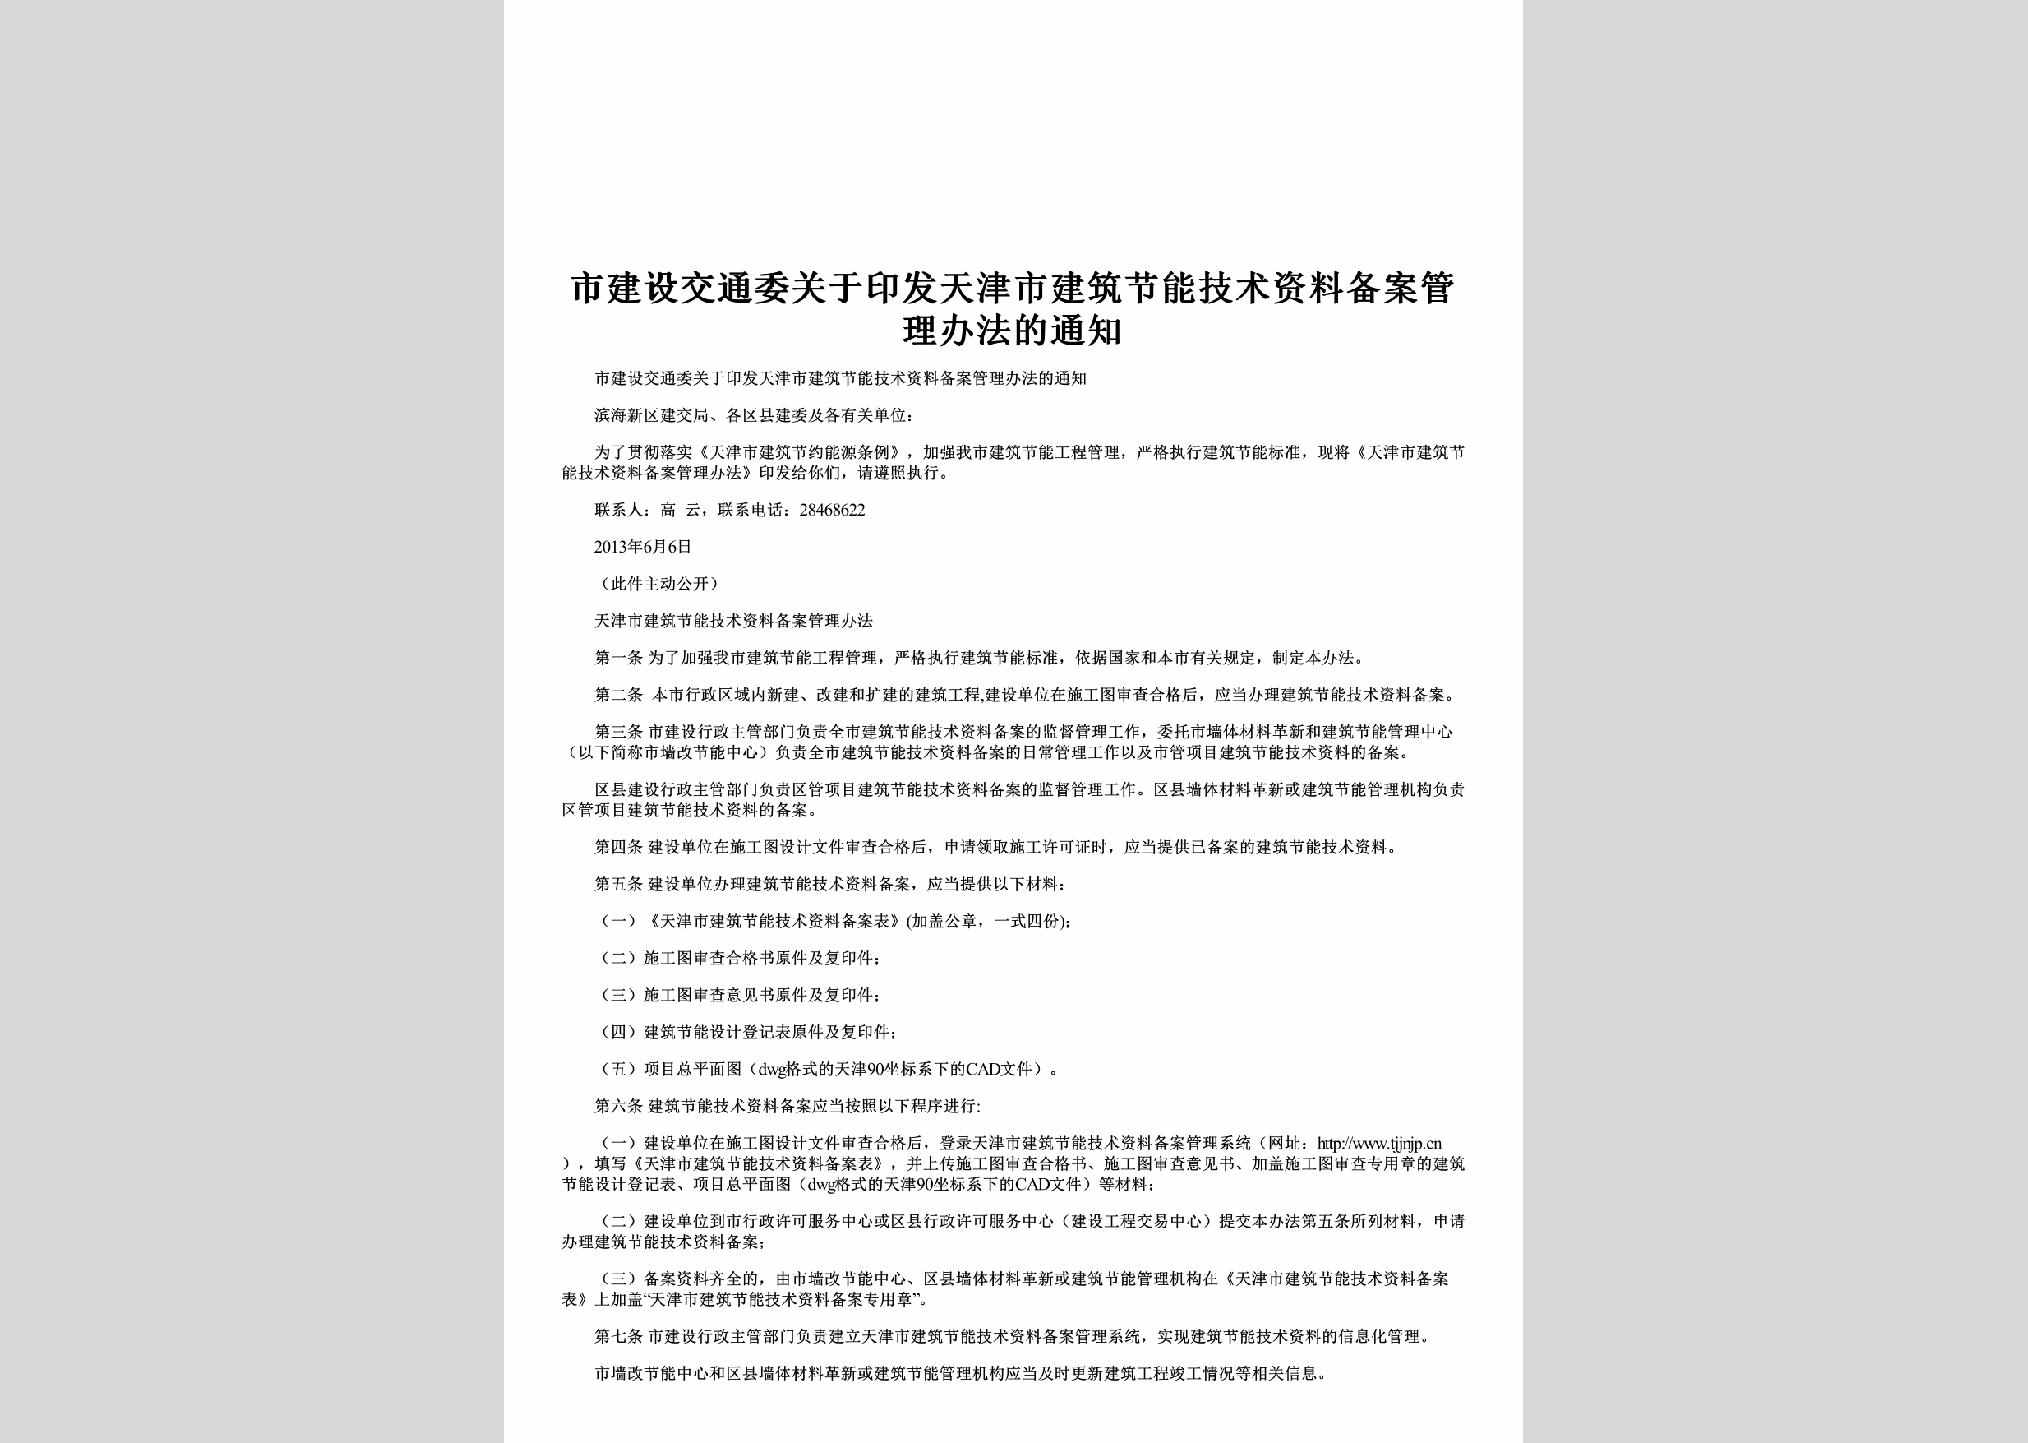 TJ-JNJSZLBA-2013：关于印发天津市建筑节能技术资料备案管理办法的通知